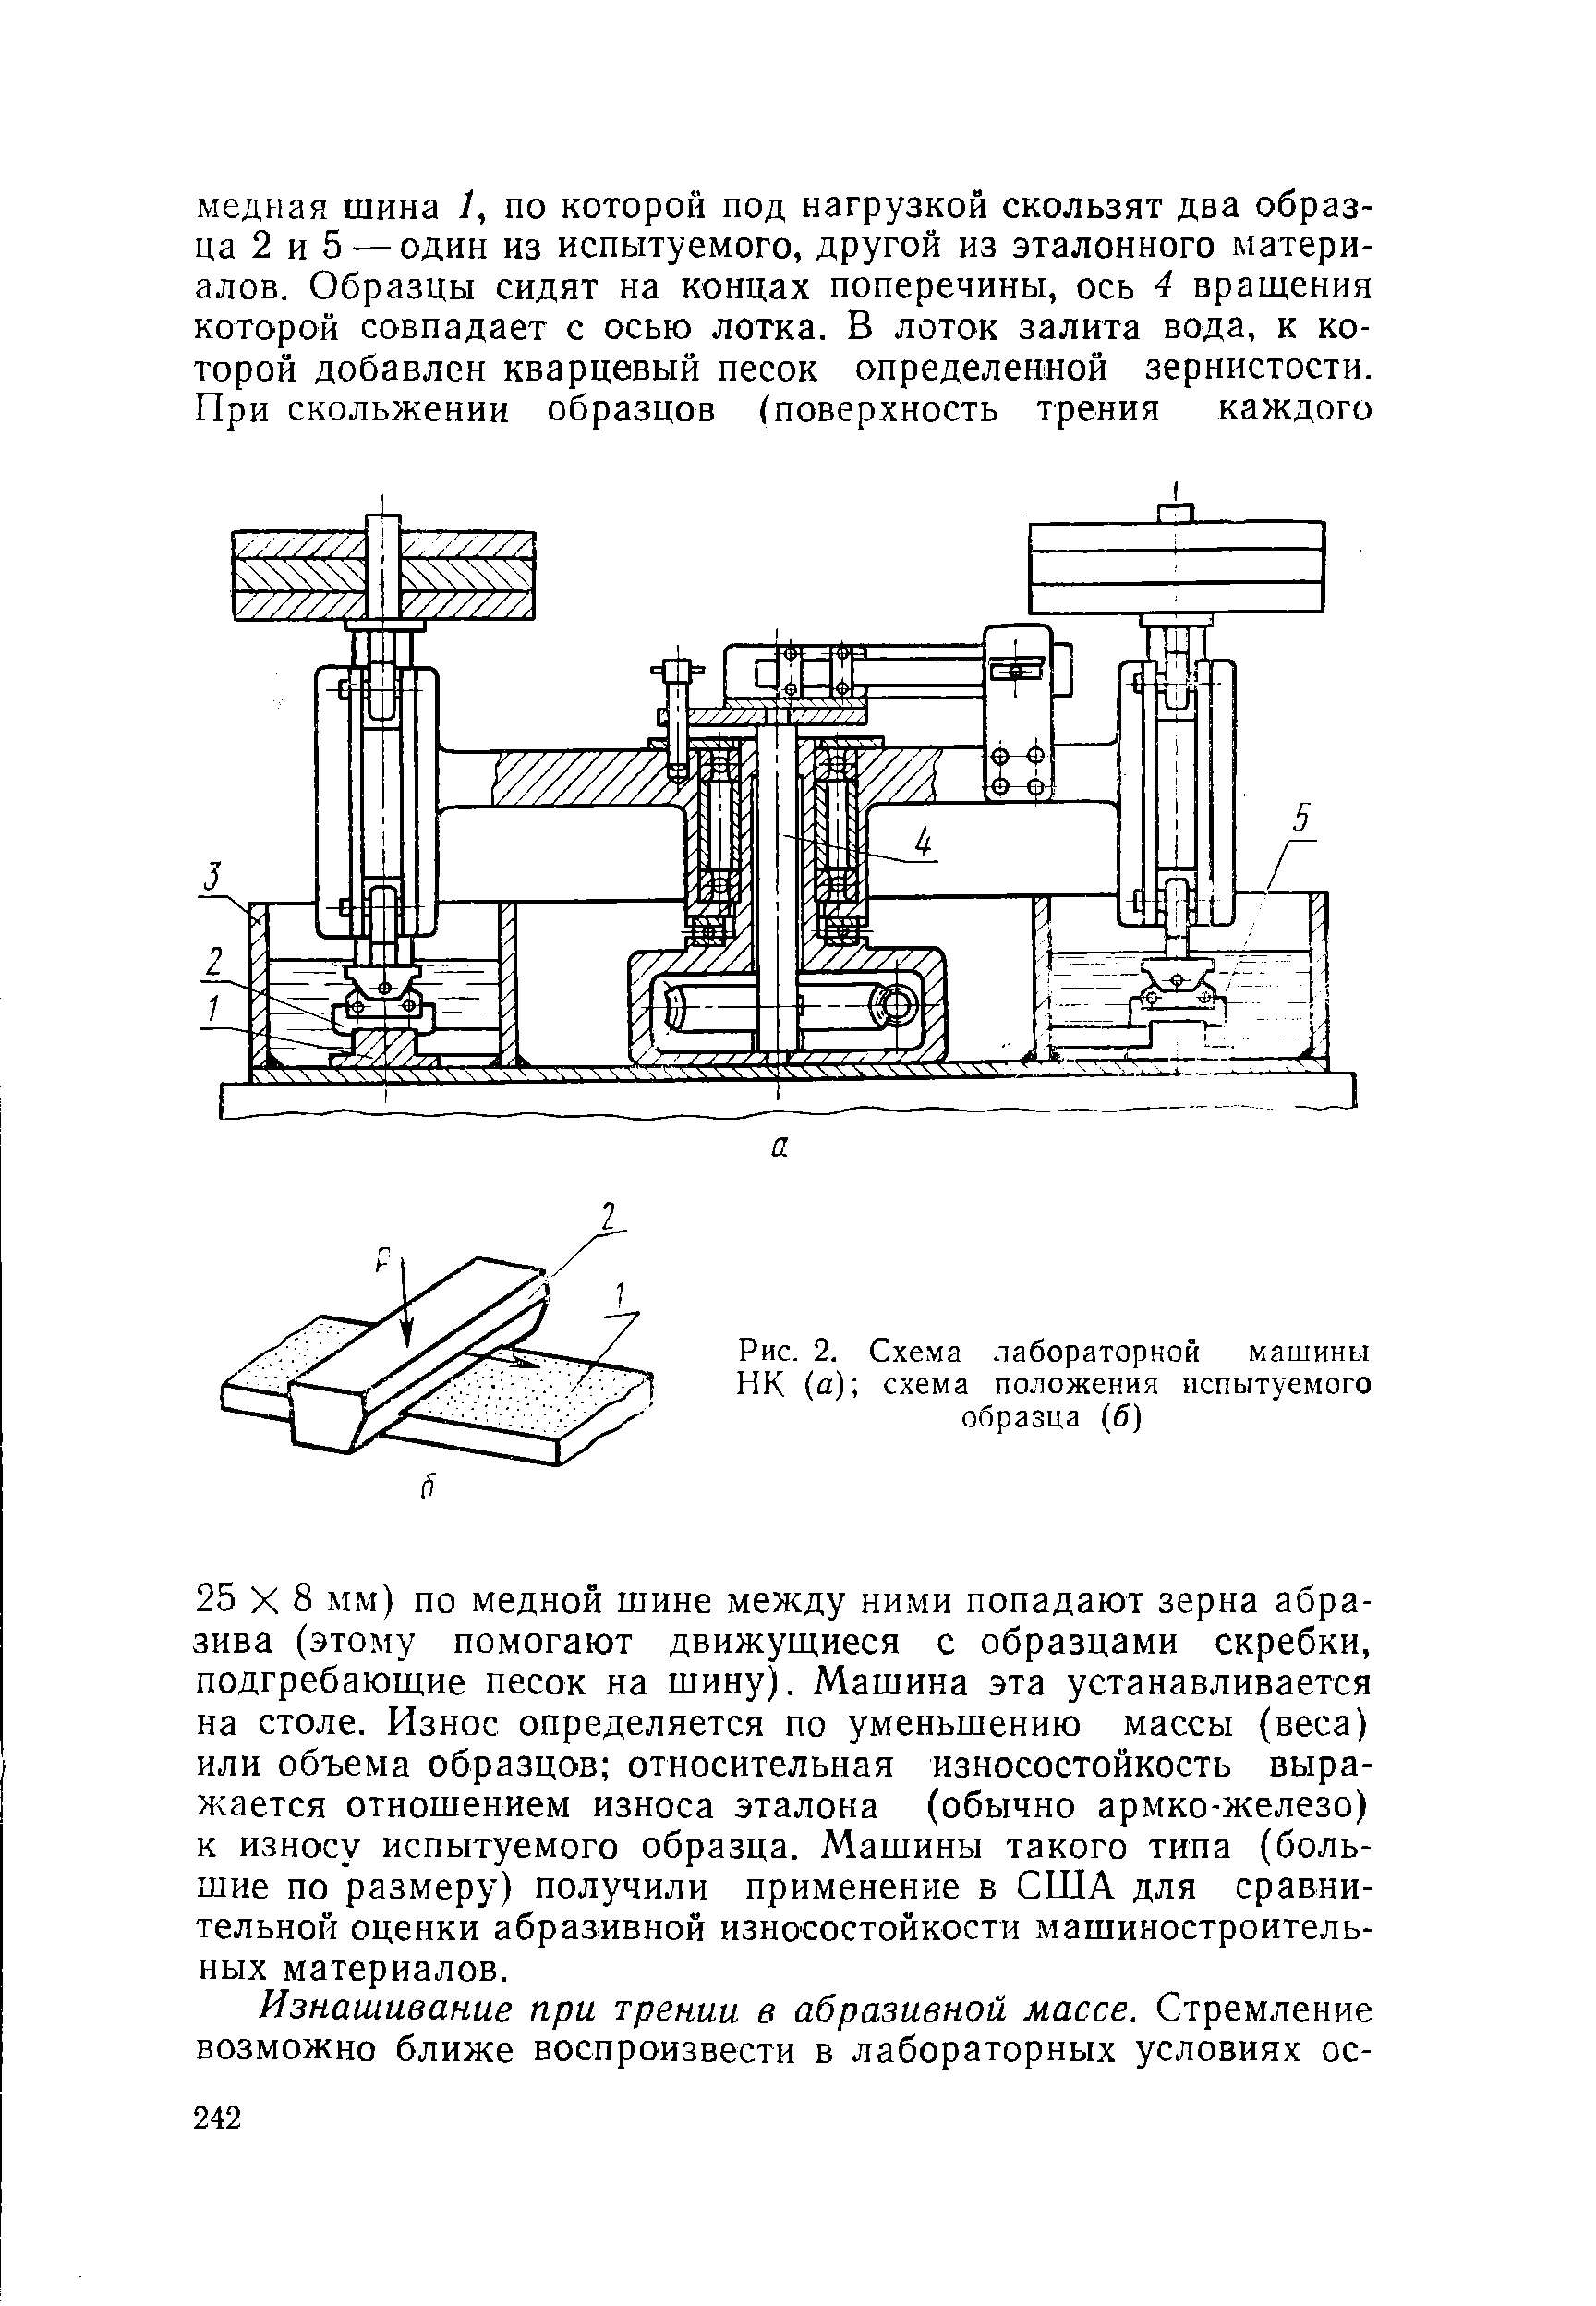 Рис. 2. Схема лабораторной машины НК (а) схема положения испытуемого образца (б)
